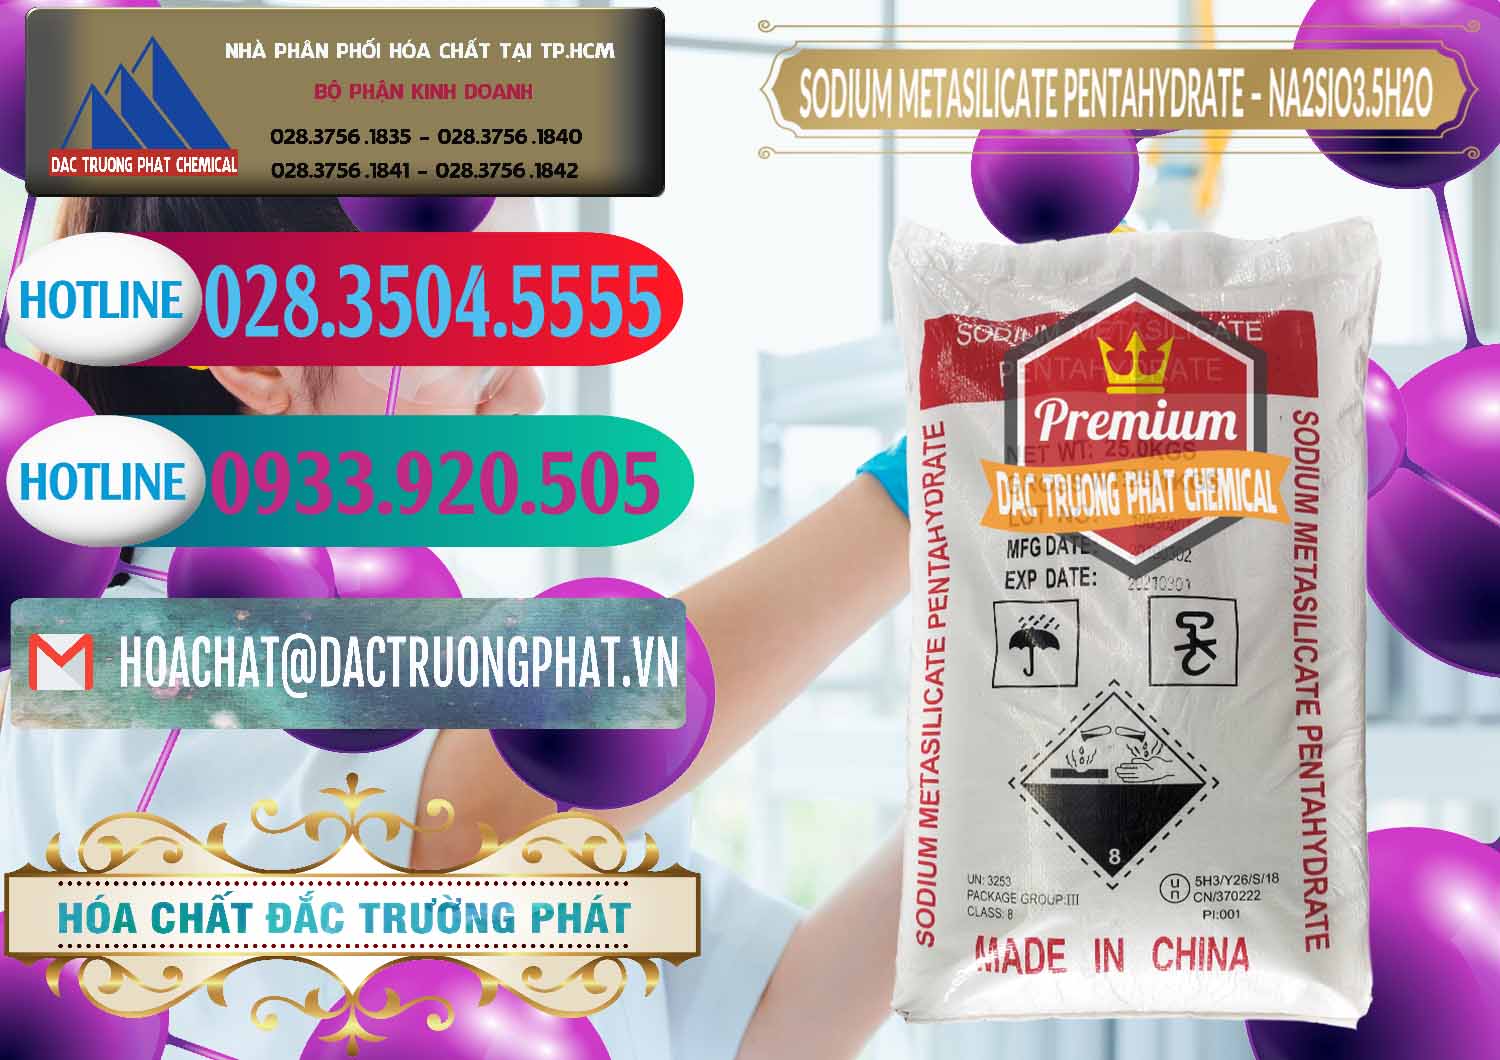 Nơi chuyên cung ứng & bán Sodium Metasilicate Pentahydrate – Silicate Bột Trung Quốc China - 0147 - Cty phân phối & nhập khẩu hóa chất tại TP.HCM - truongphat.vn